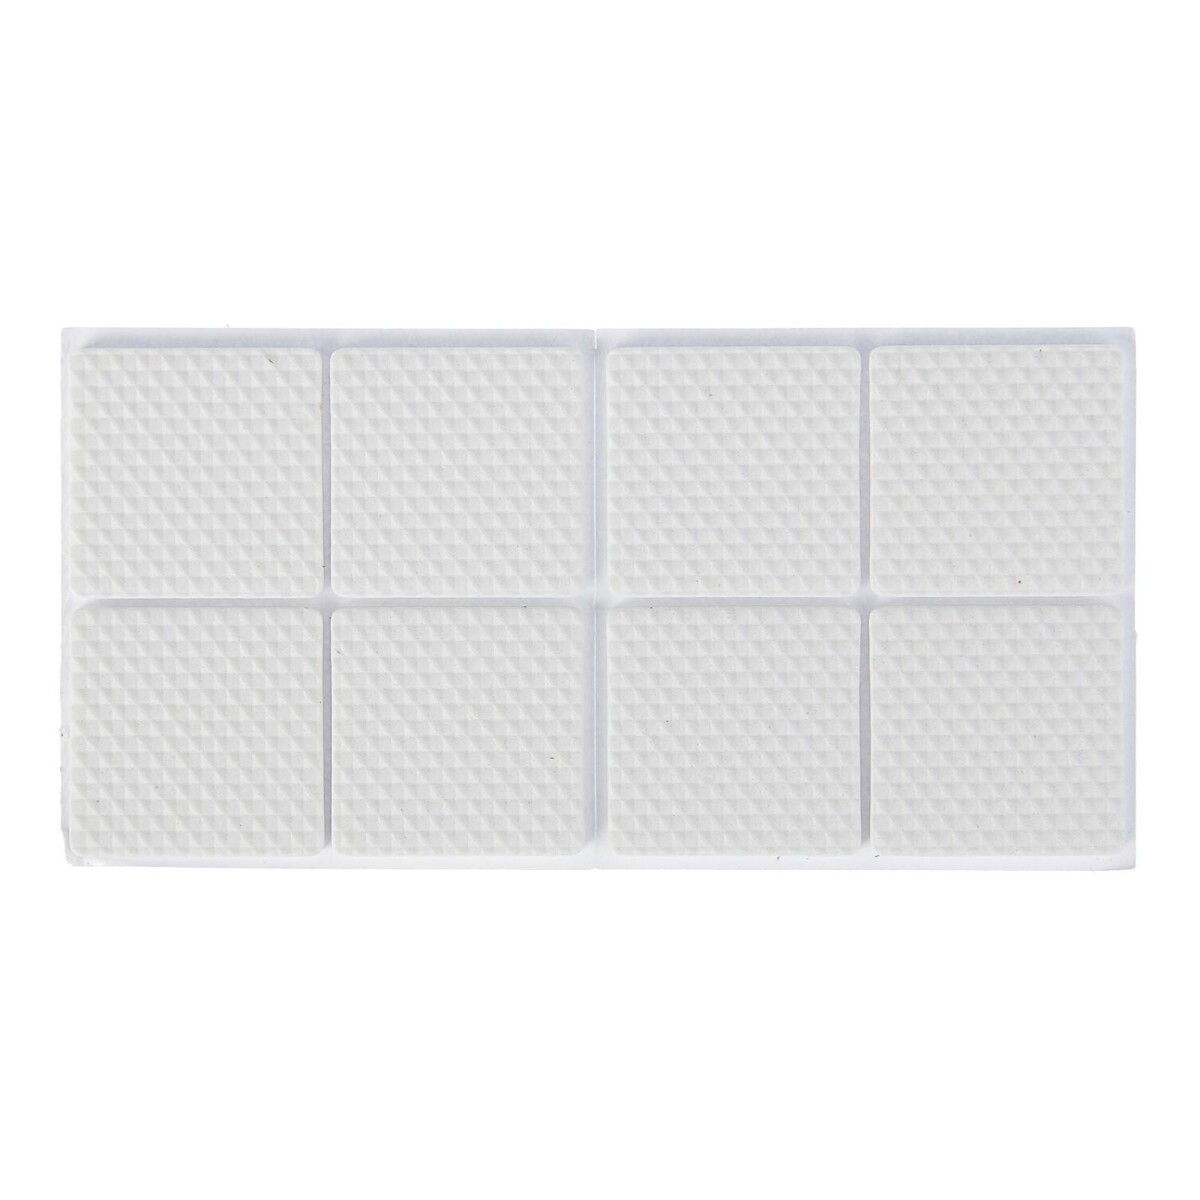 Накладка мебельная квадратная tundra, размер 38 х 38 мм, 8 шт, полимерная, цвет белый накладка мебельная силиконовая квадратная 35 40 мм 4 шт